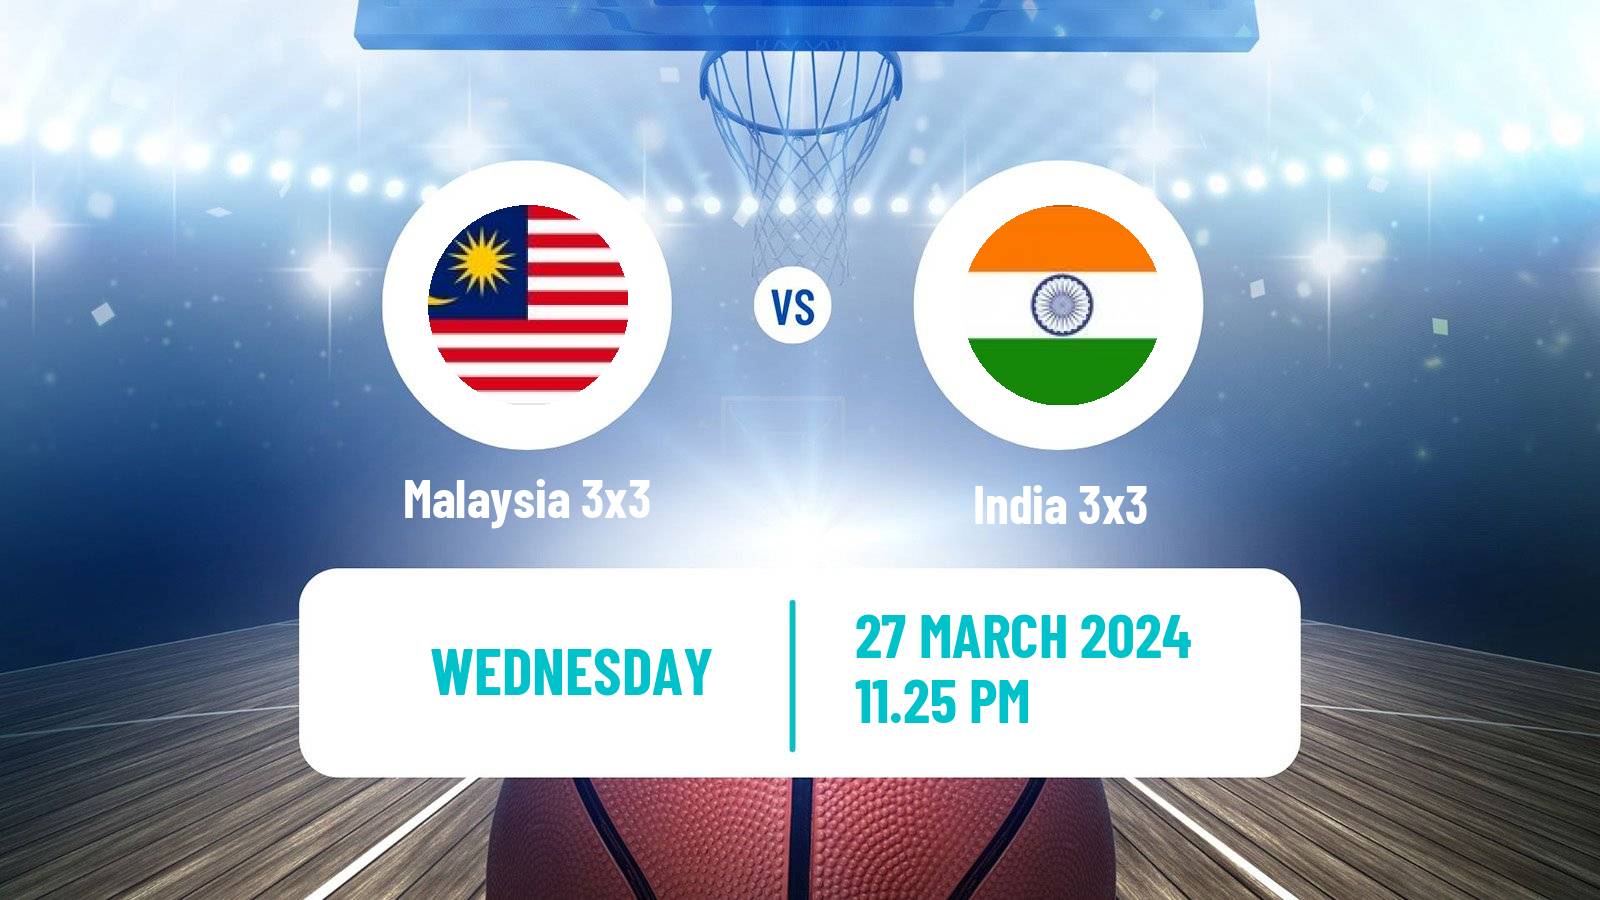 Basketball Asia Cup 3x3 Malaysia 3x3 - India 3x3